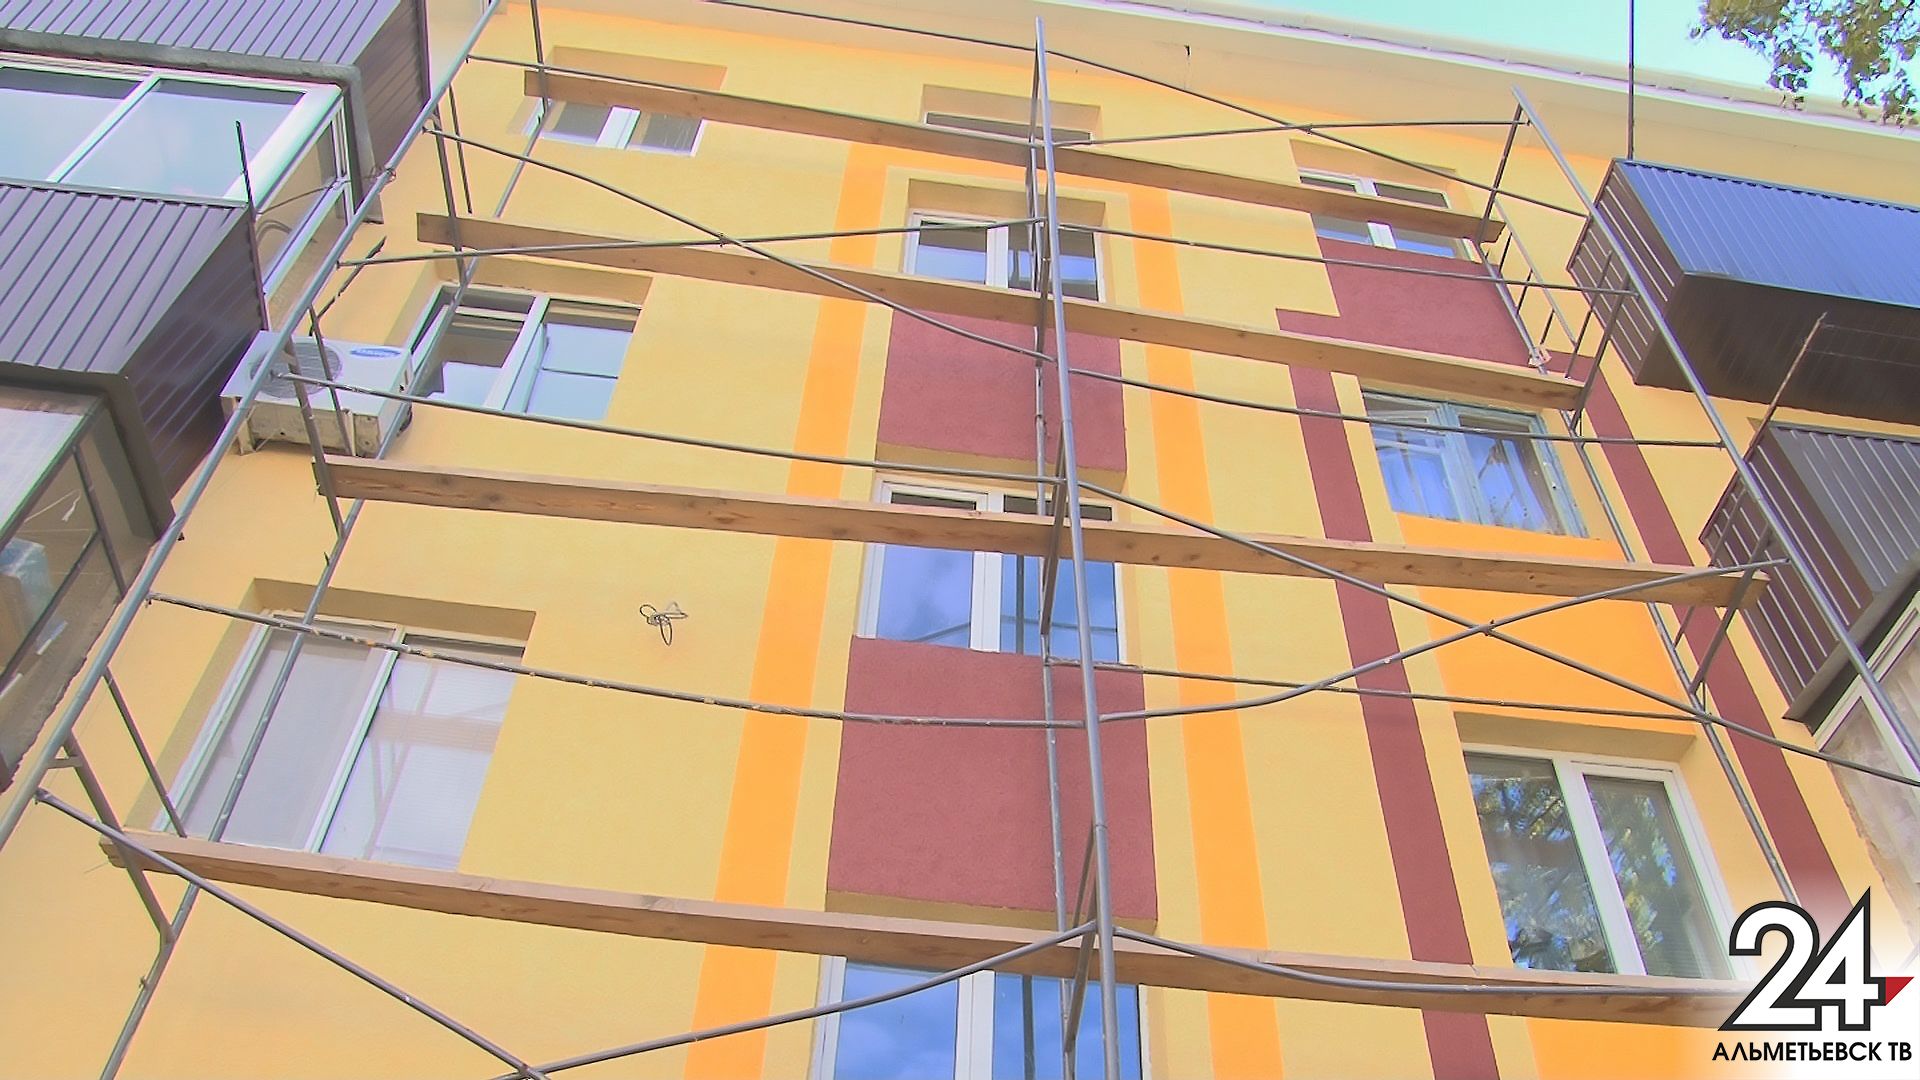 В Татарстане капитальный ремонт стартовал в 19 многоквартирных домах